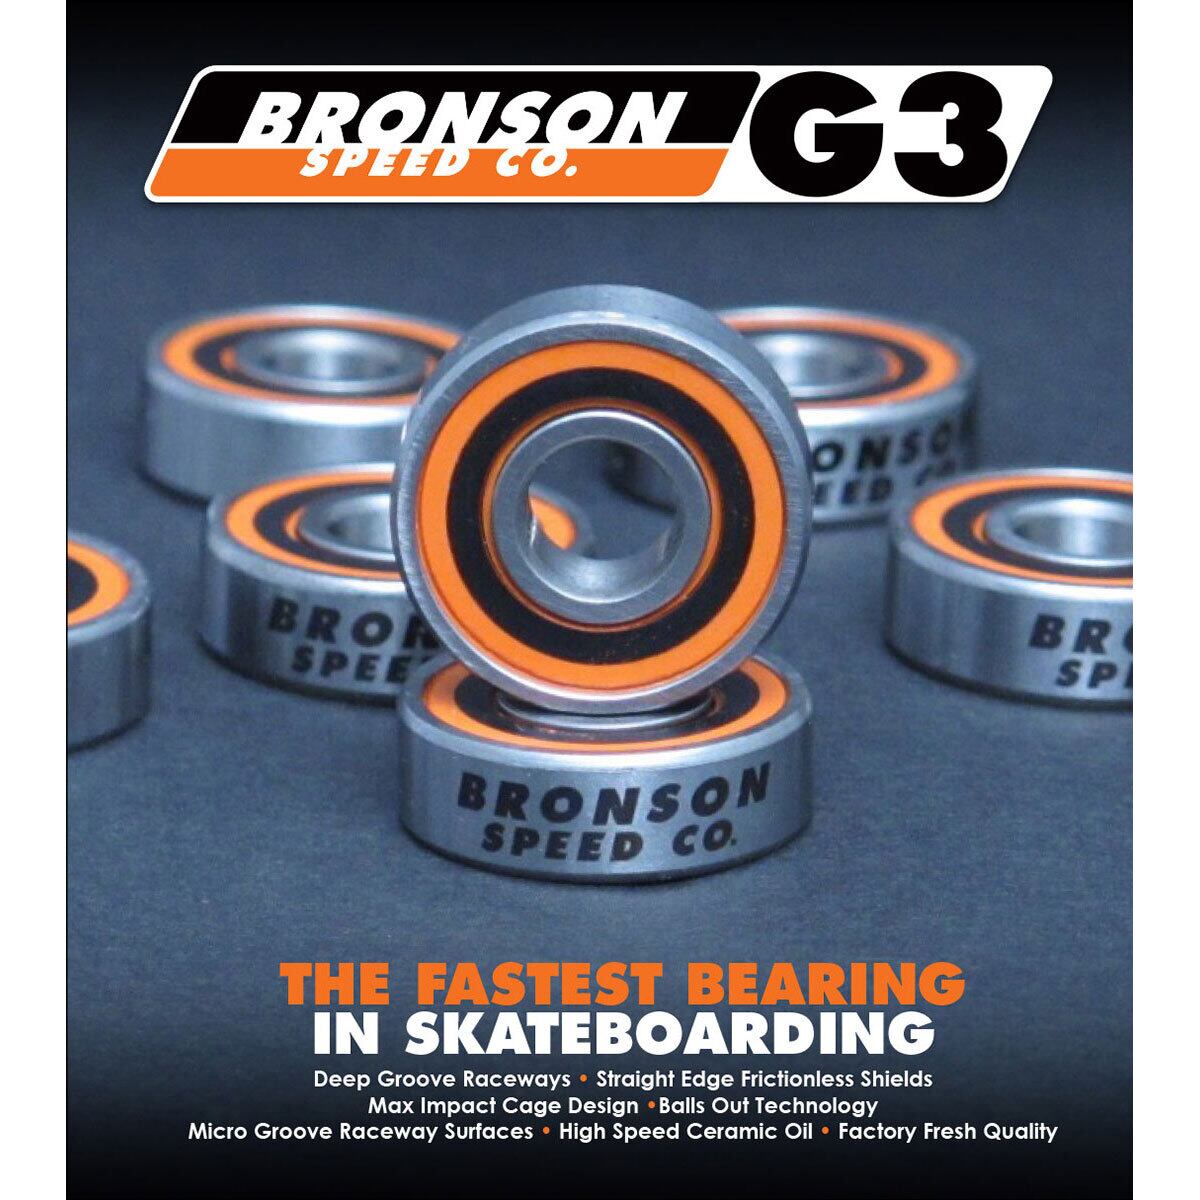 4/5(水) 再入荷 【正規輸入品】 BRONSON SPEED CO. (ブロンソン) G3 BOX/8 Skateboard Bearings  ブロンソン ベアリング スケボー スケートボード スケボーベアリングブロンソン OSS